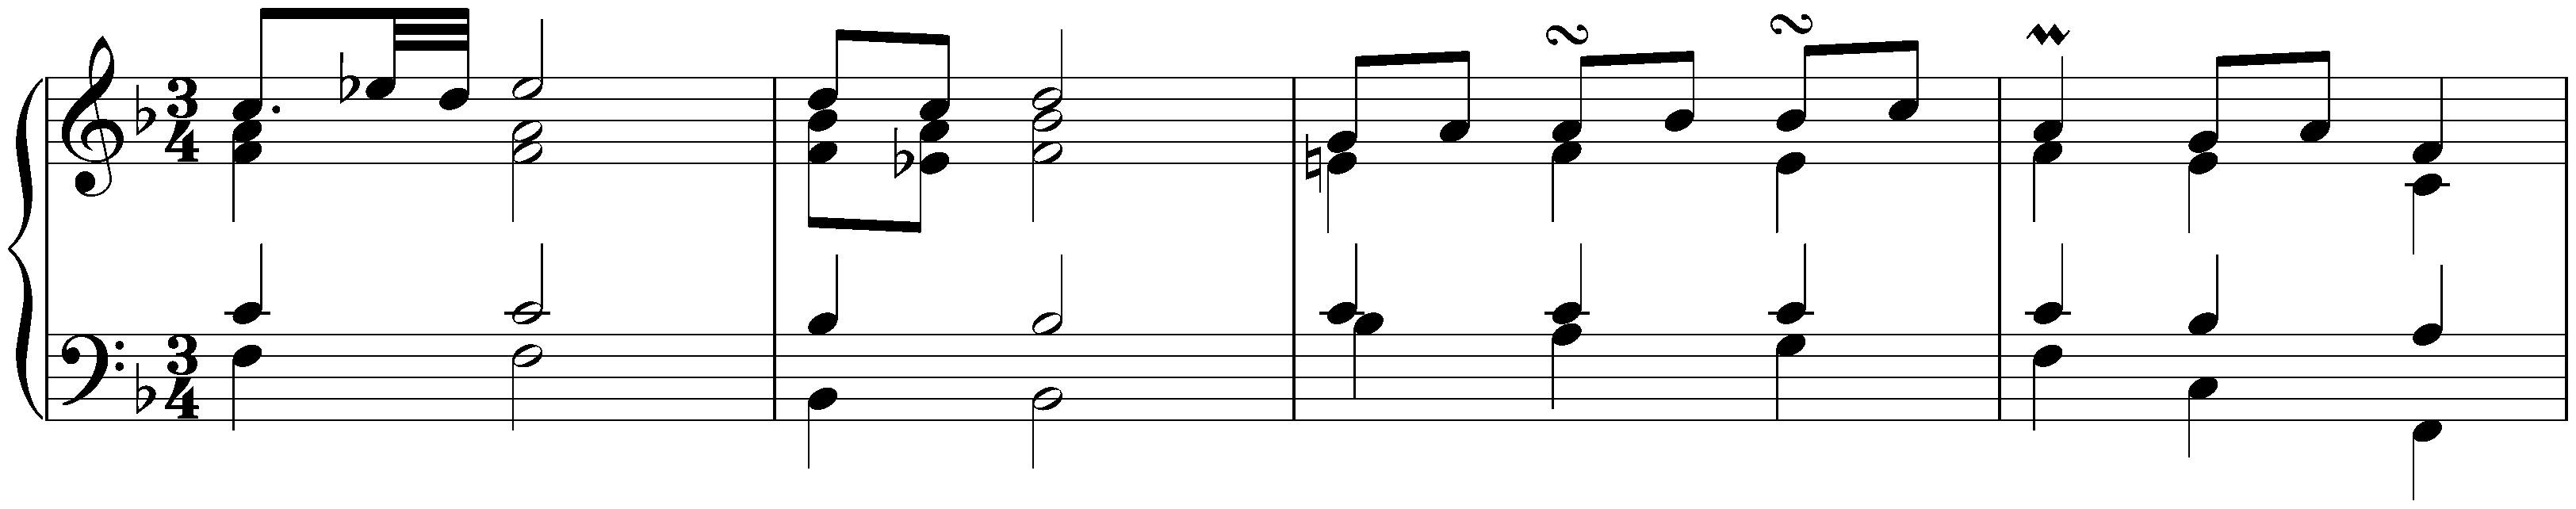 English Suite no. 4 in F major, BWV 809; 4. Sarabande